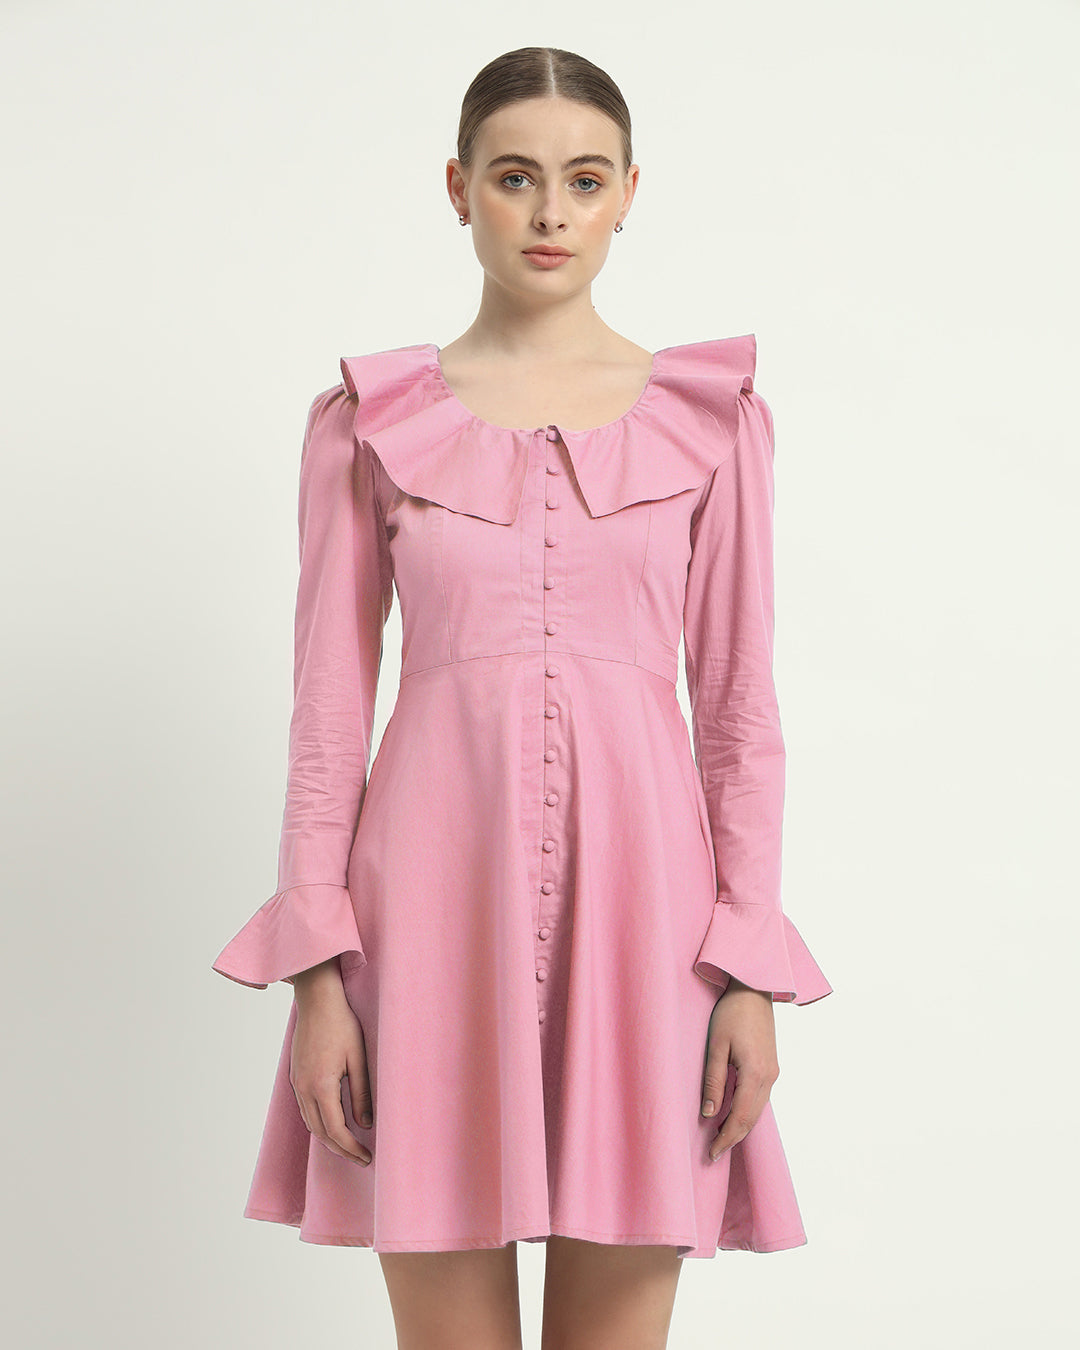 The Fredonia Fondant Pink Cotton Dress